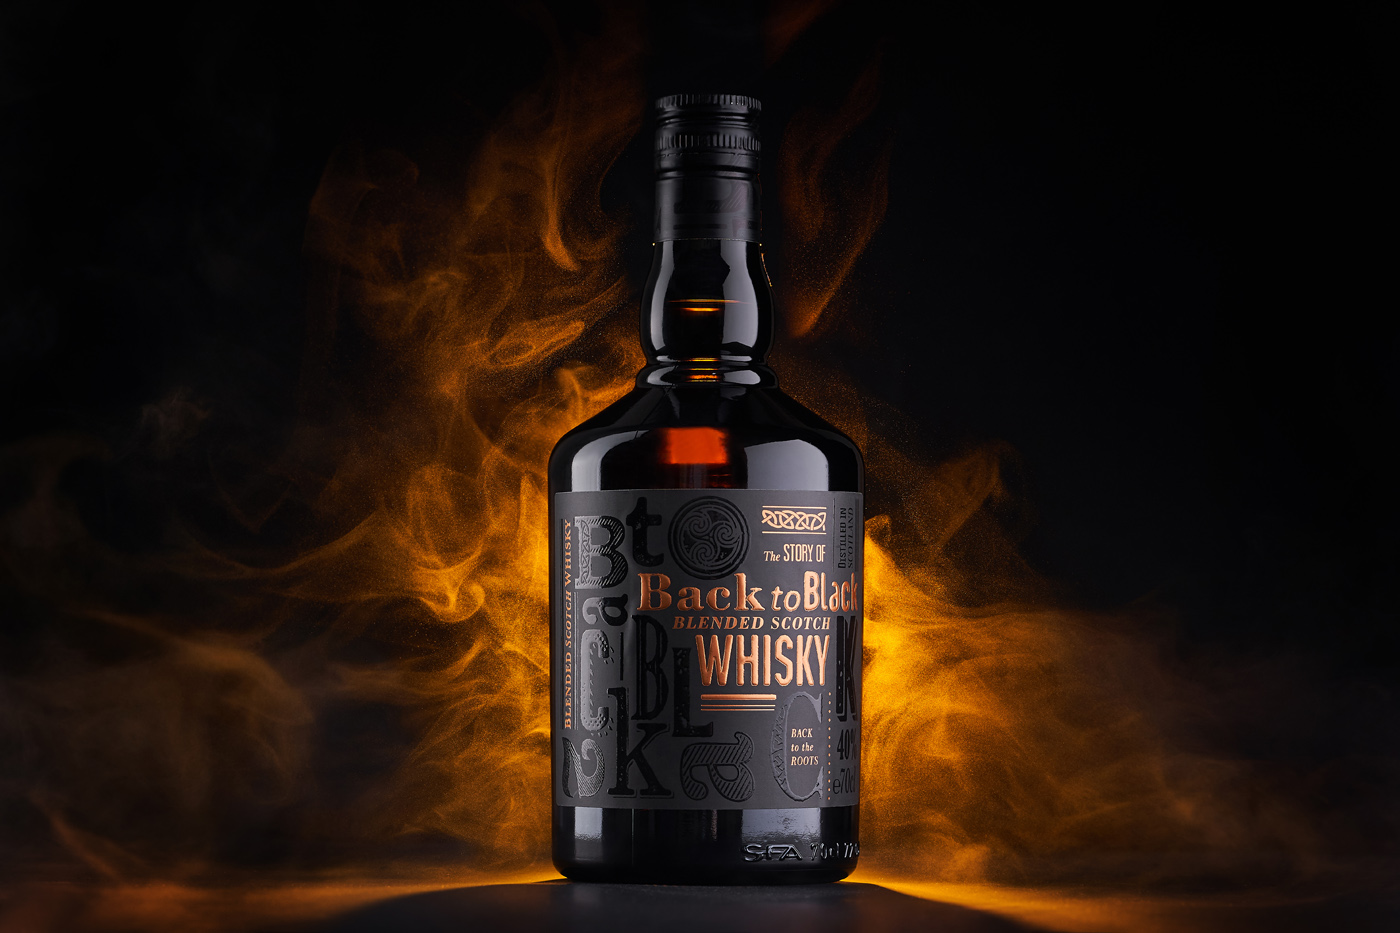 Back to Black Blended Scotch Packaging Label Design by 43oz Design Studio